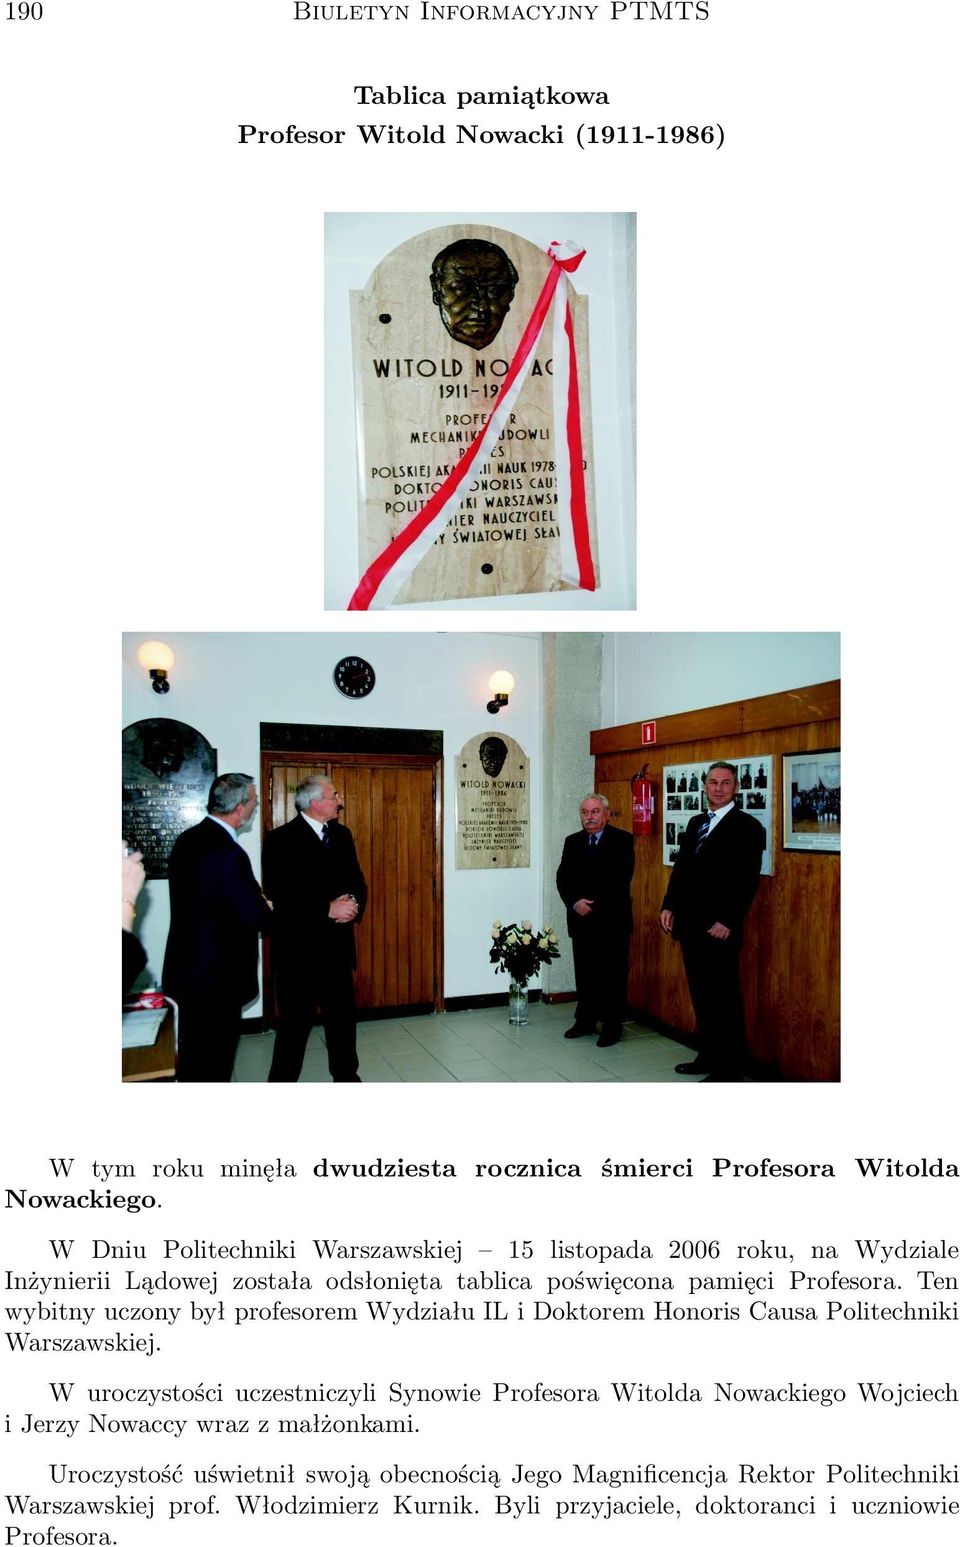 Ten wybitny uczony był profesorem Wydziału IL i Doktorem Honoris Causa Politechniki Warszawskiej.